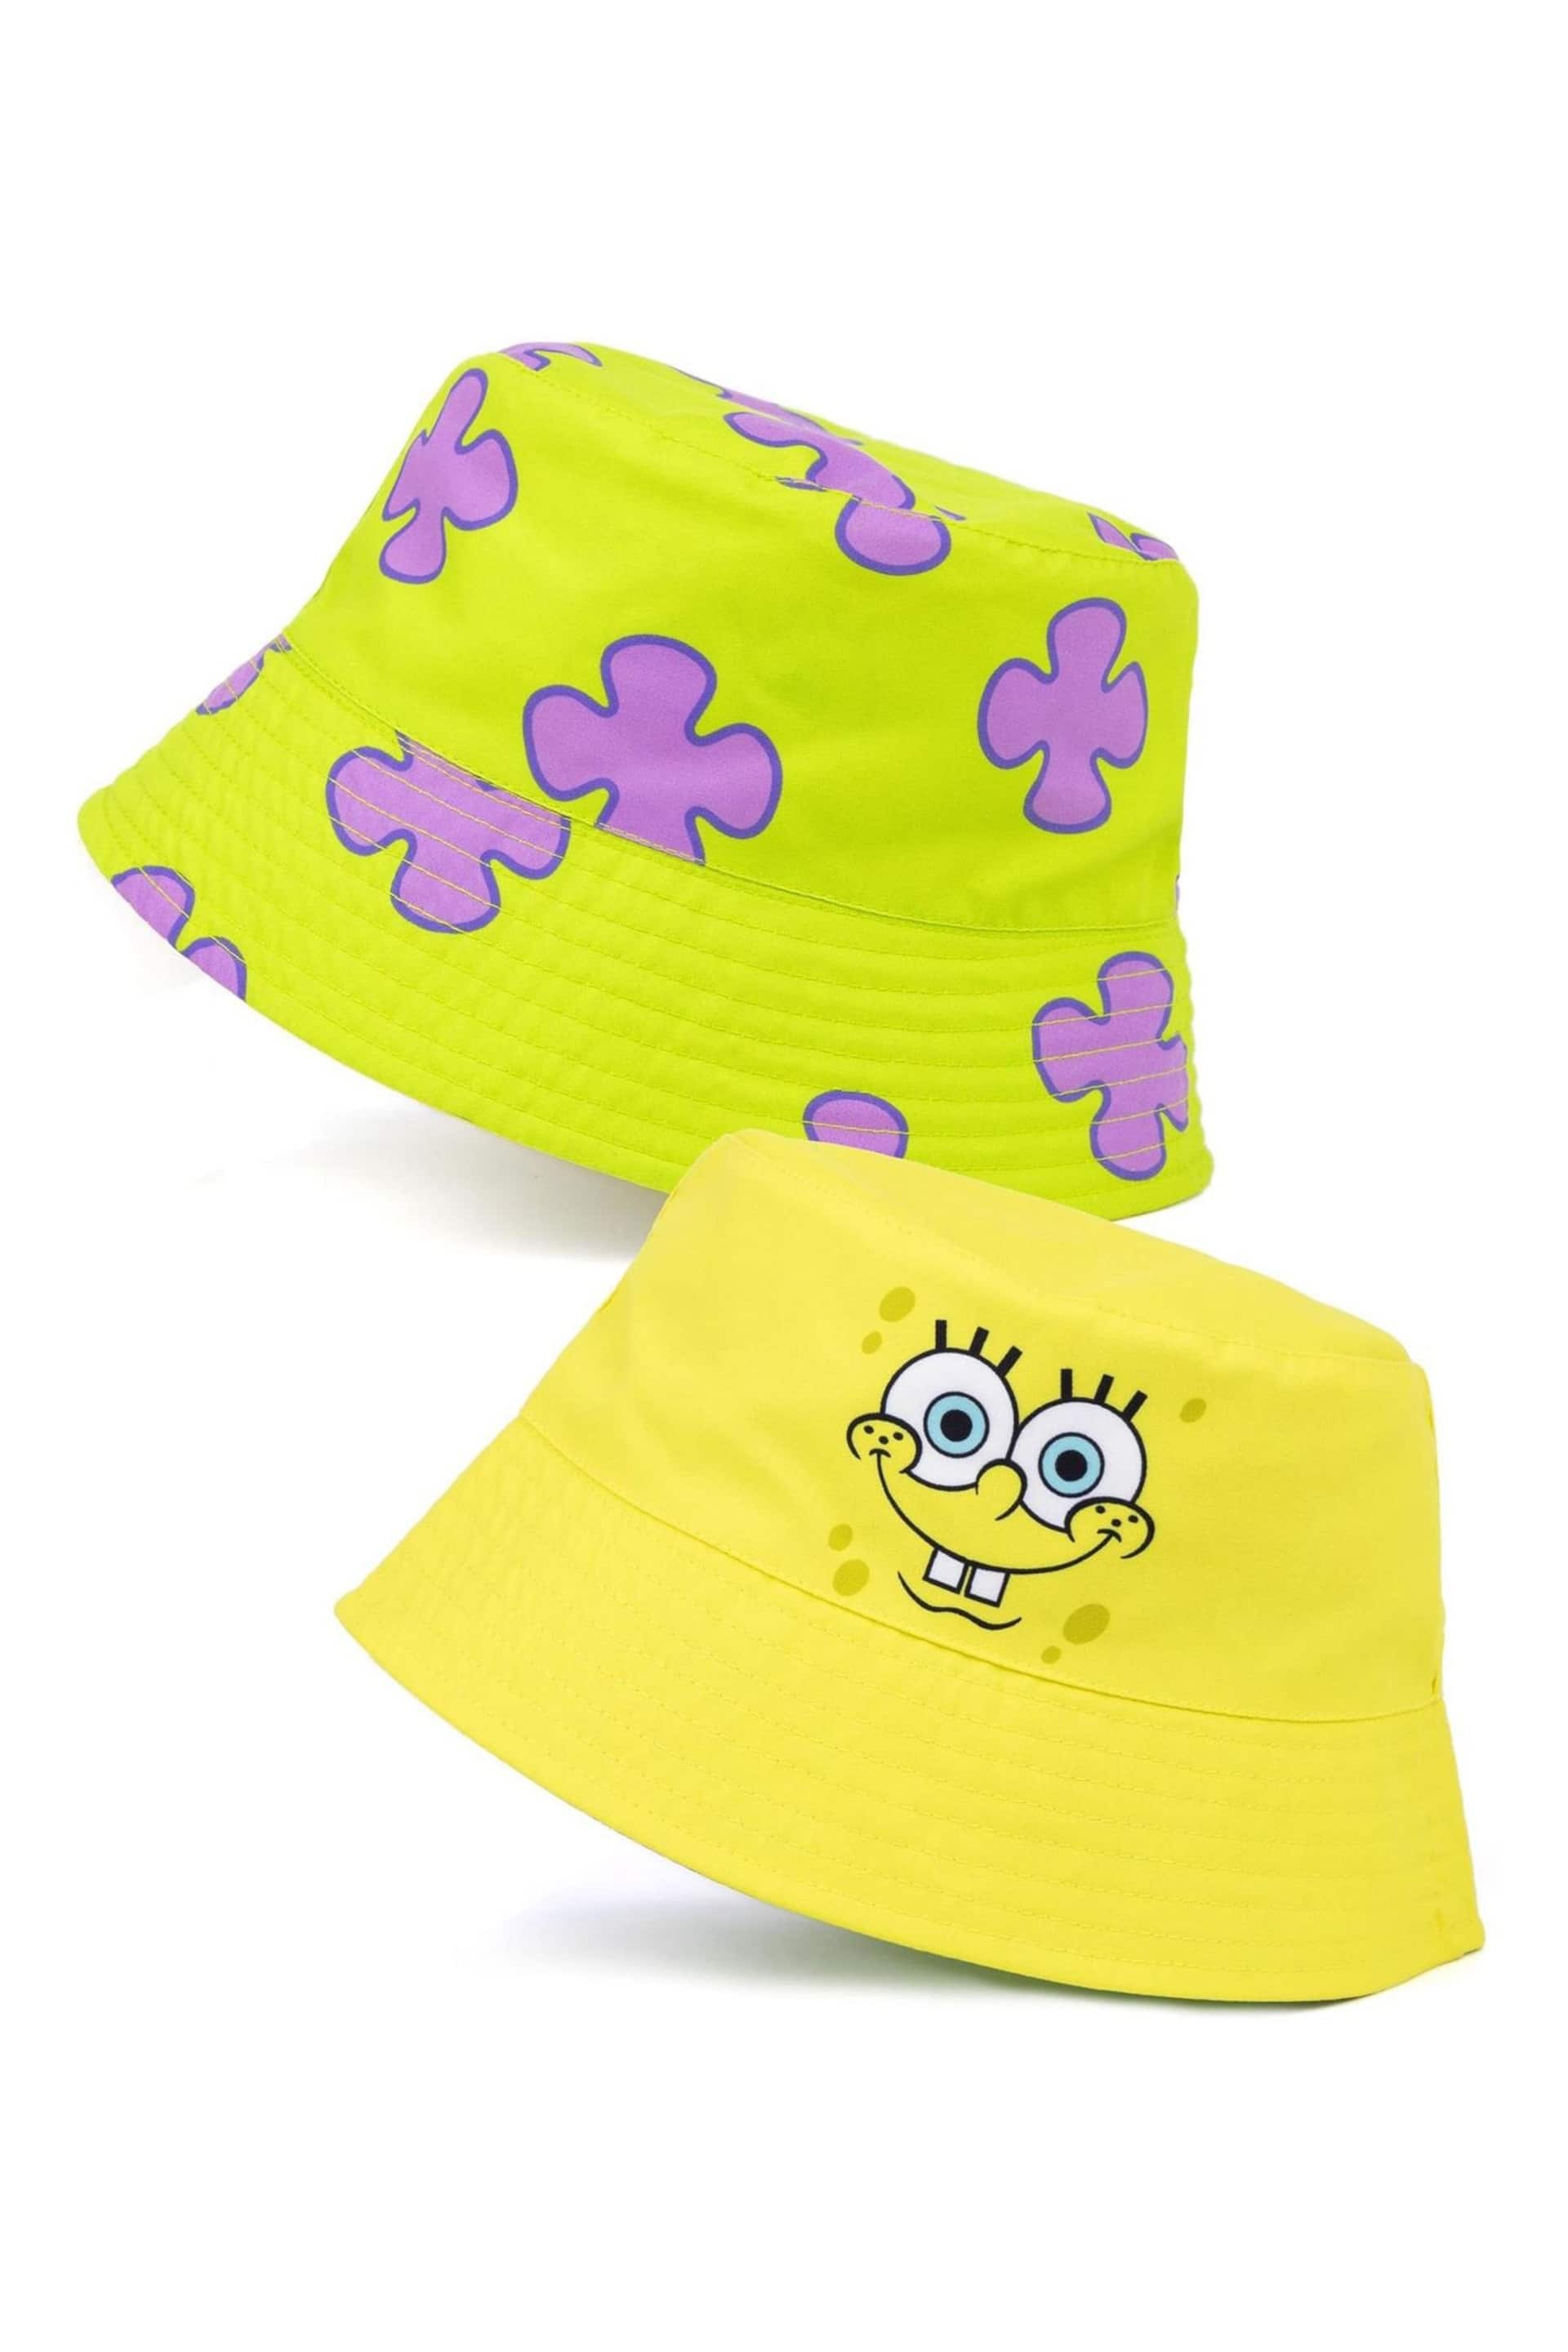 Vanilla Underground Yellow Spongebob Licensing Reversible Bucket Kids Hat - Image 1 of 5